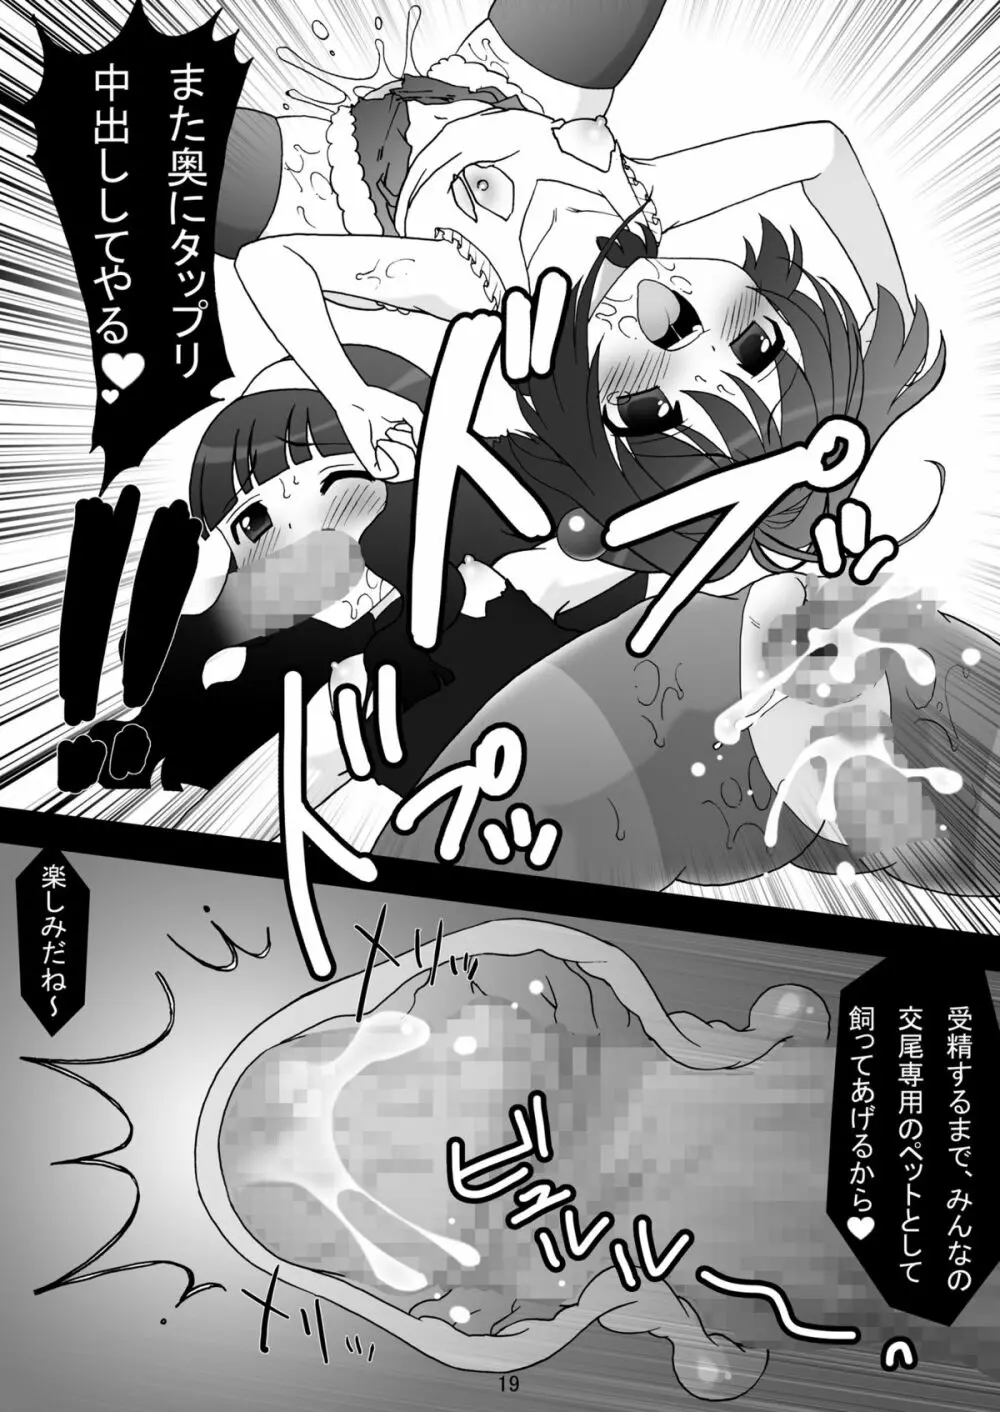 sakura twilight time - page19